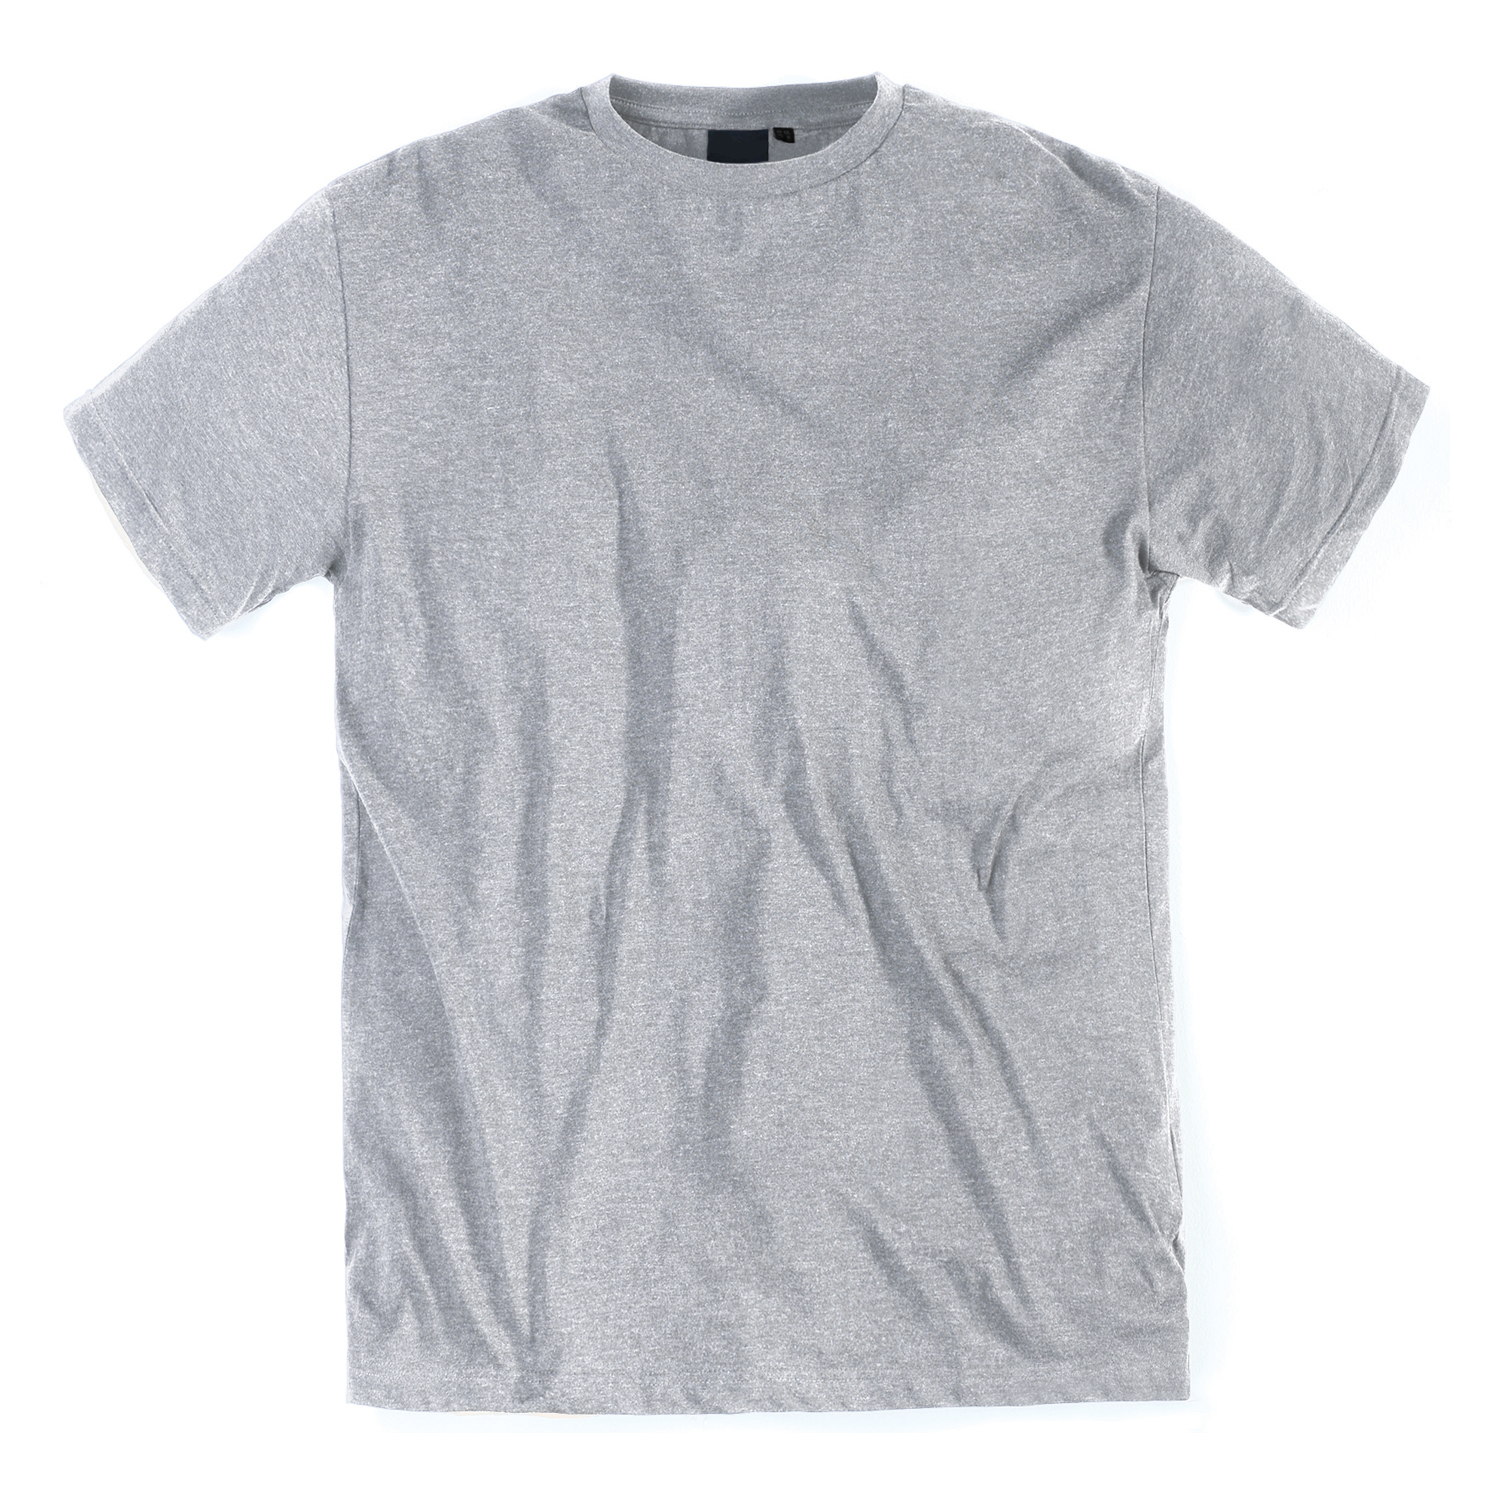 Übergrößen T-Shirt für Männer in graumeliert von Replika bis 8XL im 2er Pack